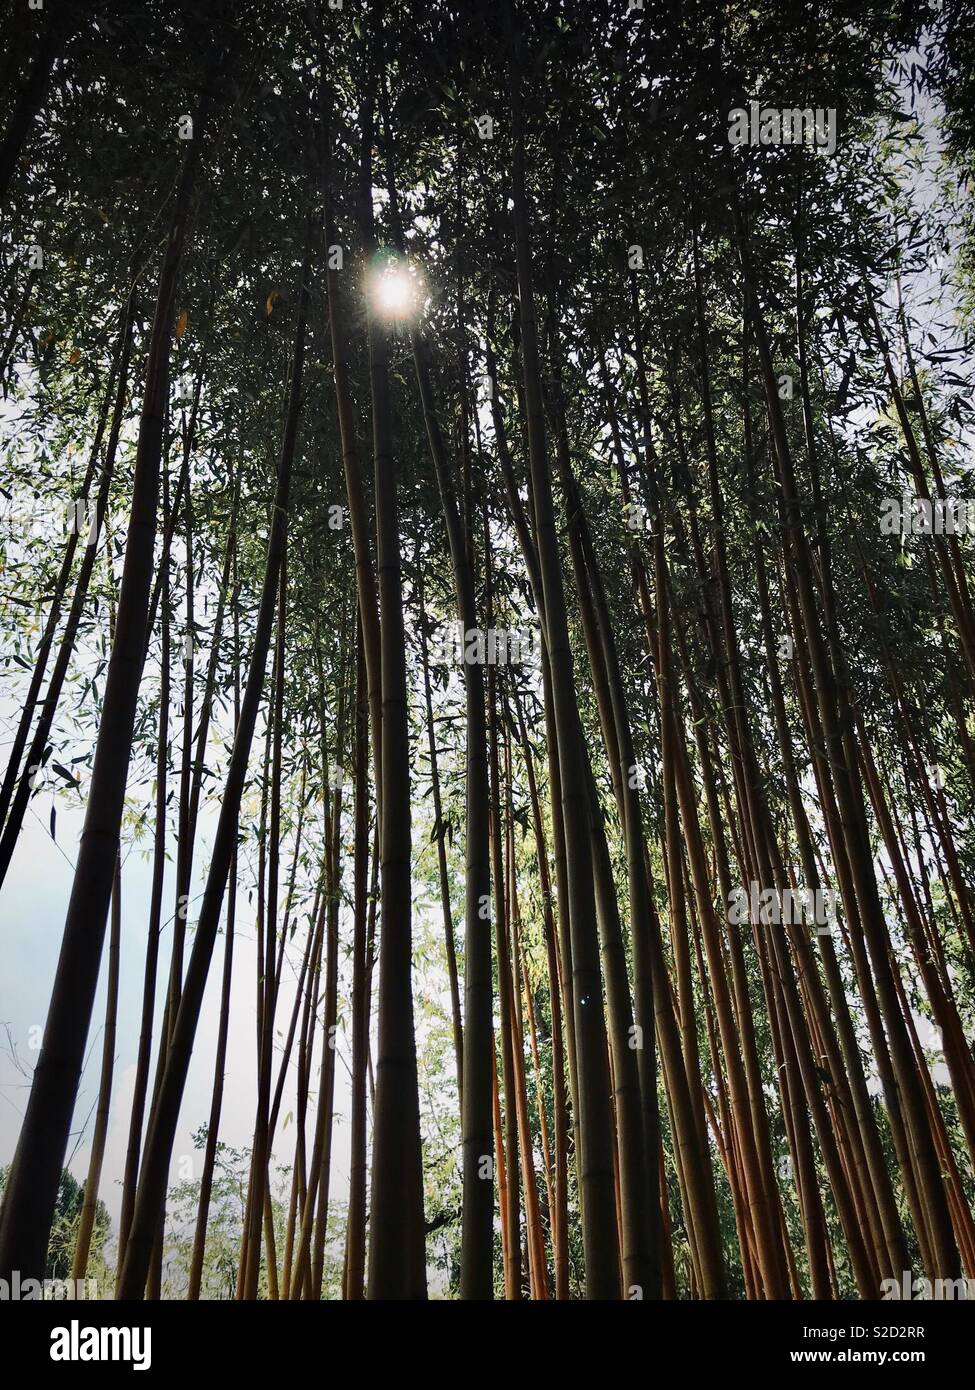 Forêt de bambou, bambou géant Banque D'Images